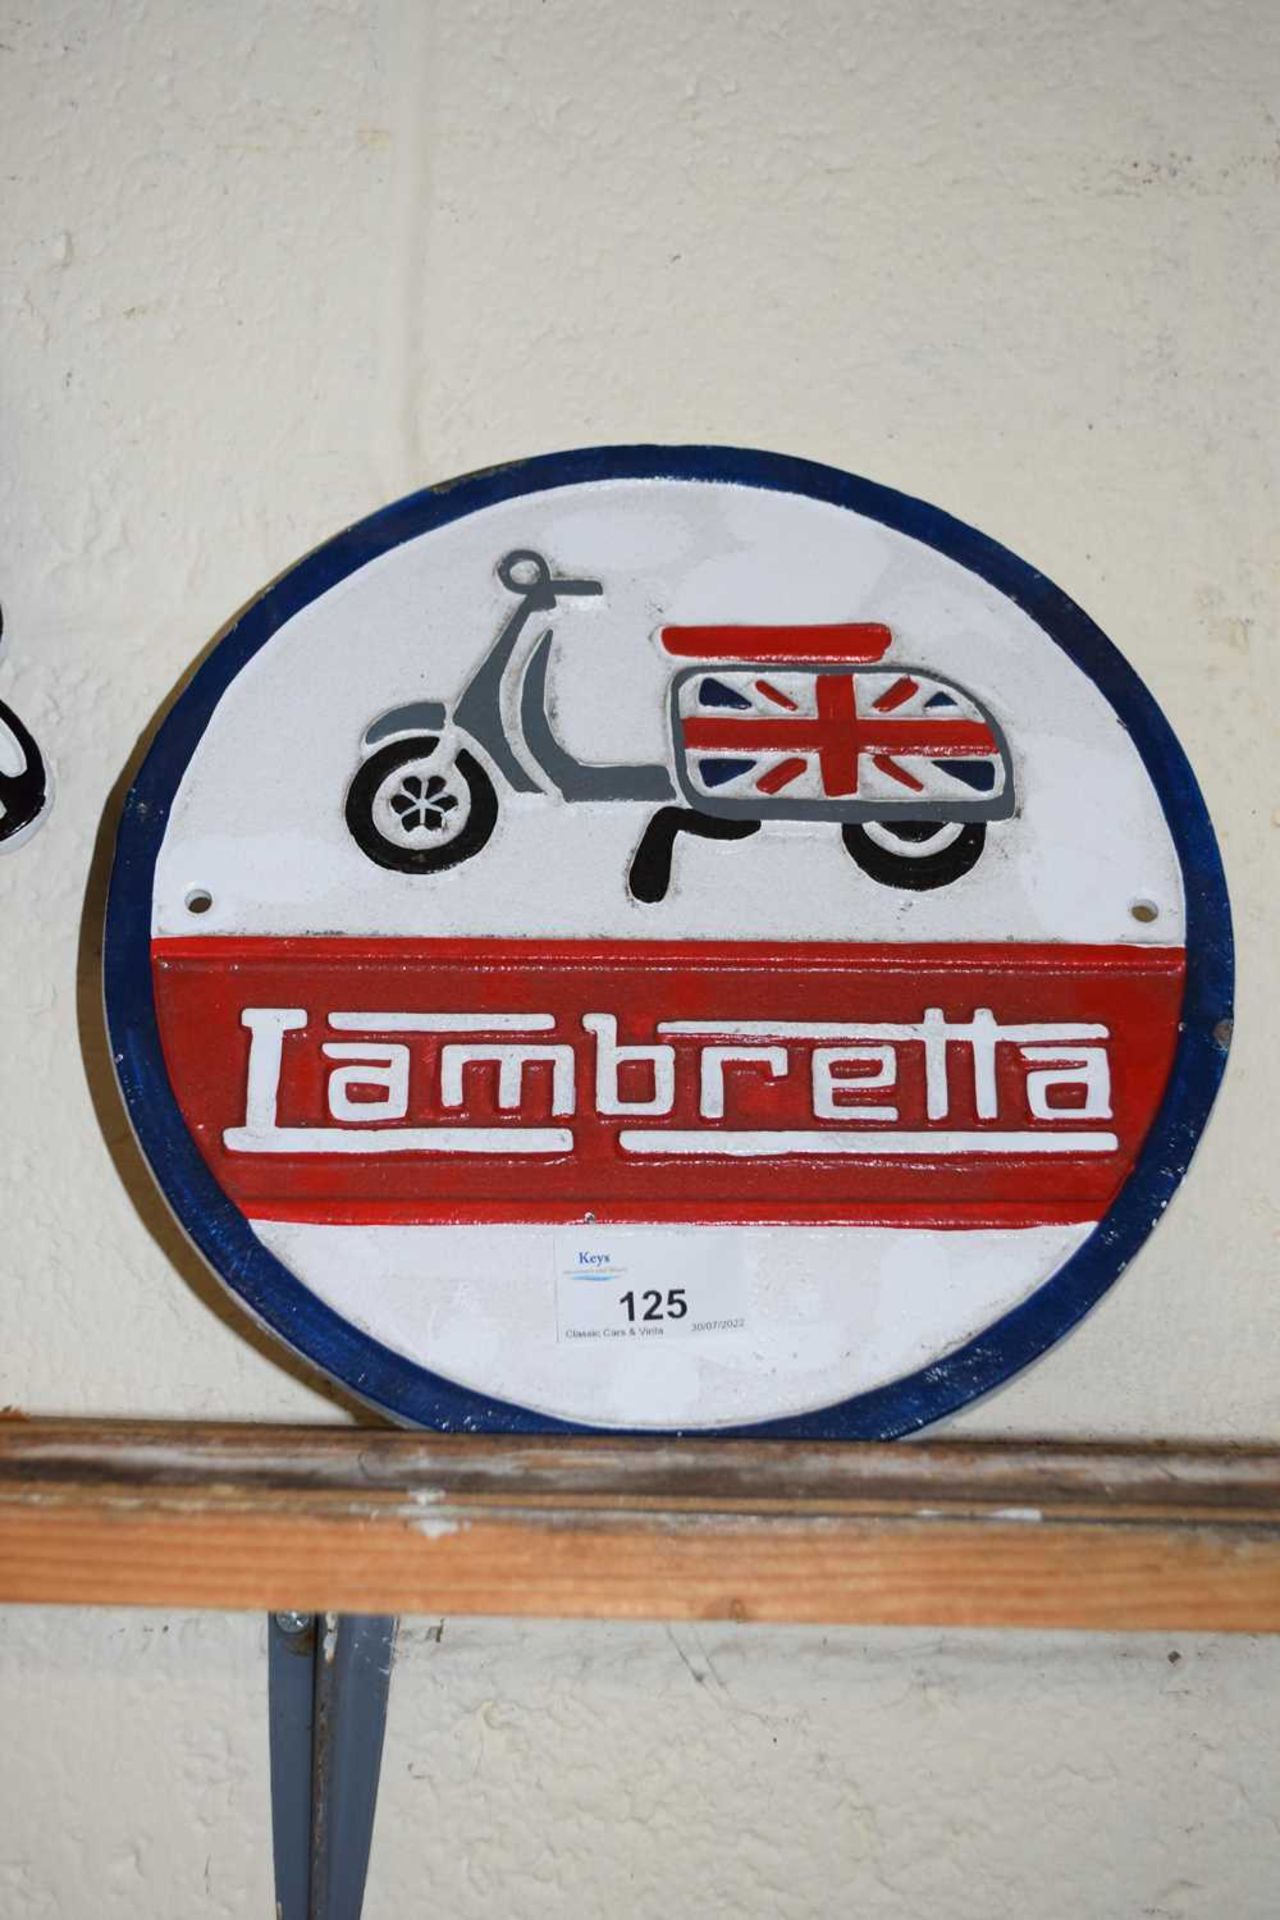 Circular cast iron wall plaque 'Lambretta'